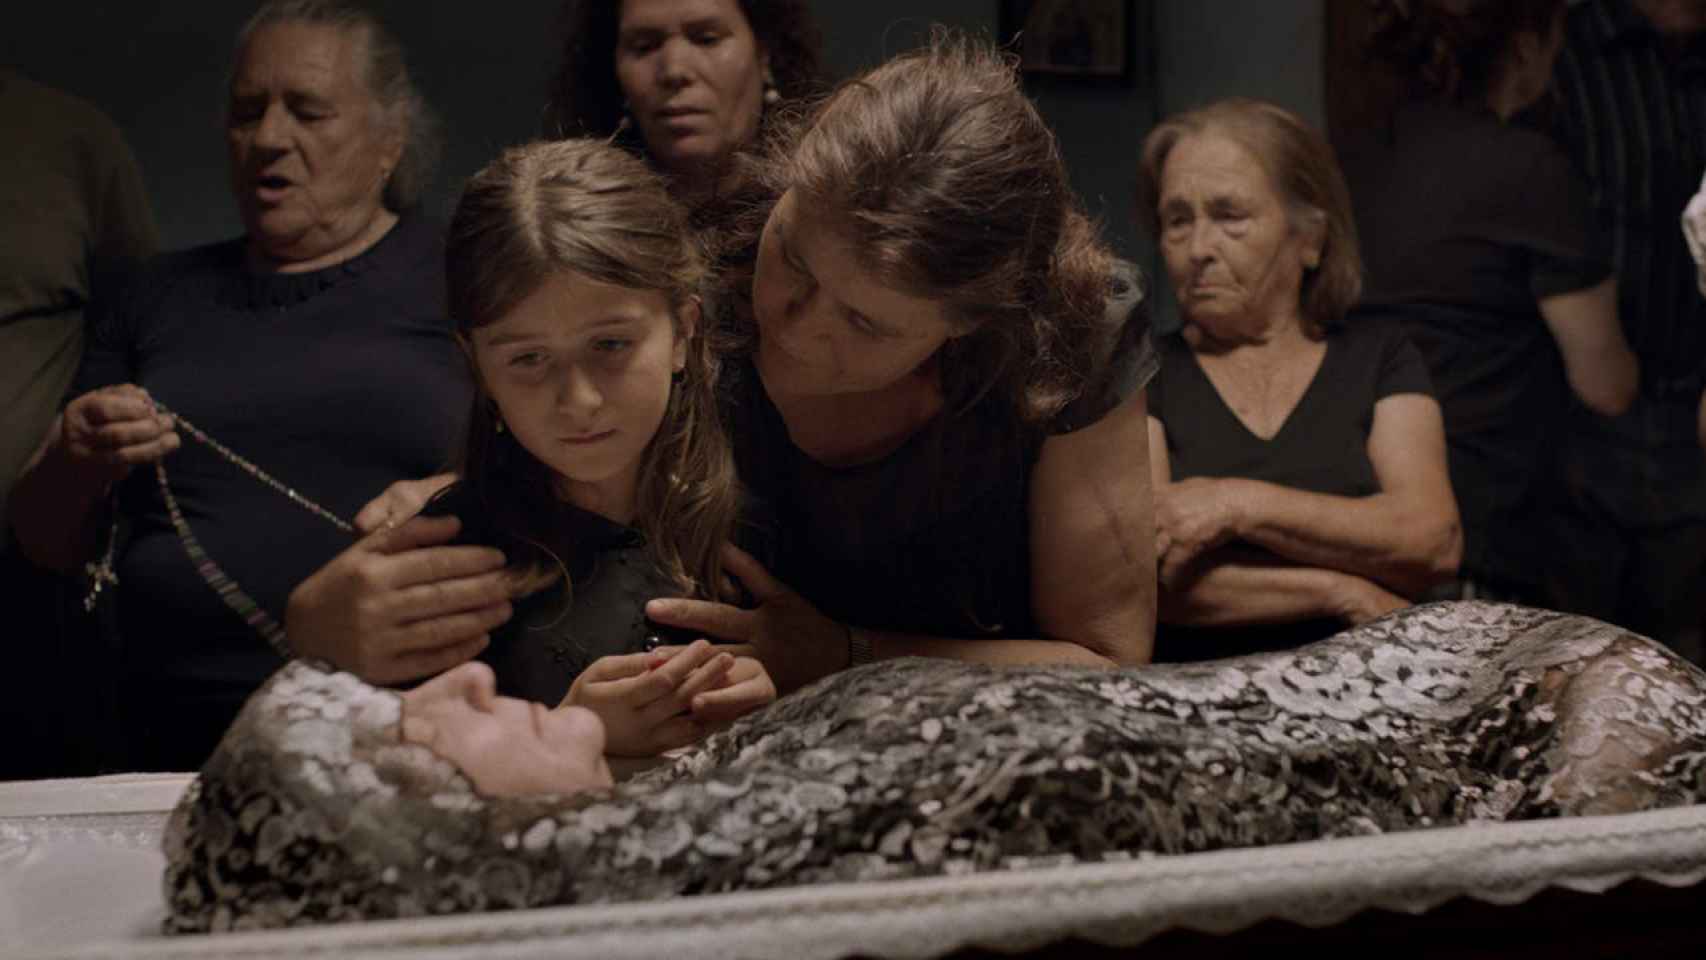 Lua Michel y Ana Padrão, frente al cuerpo sin vida de la abuela (Ester Catalao)